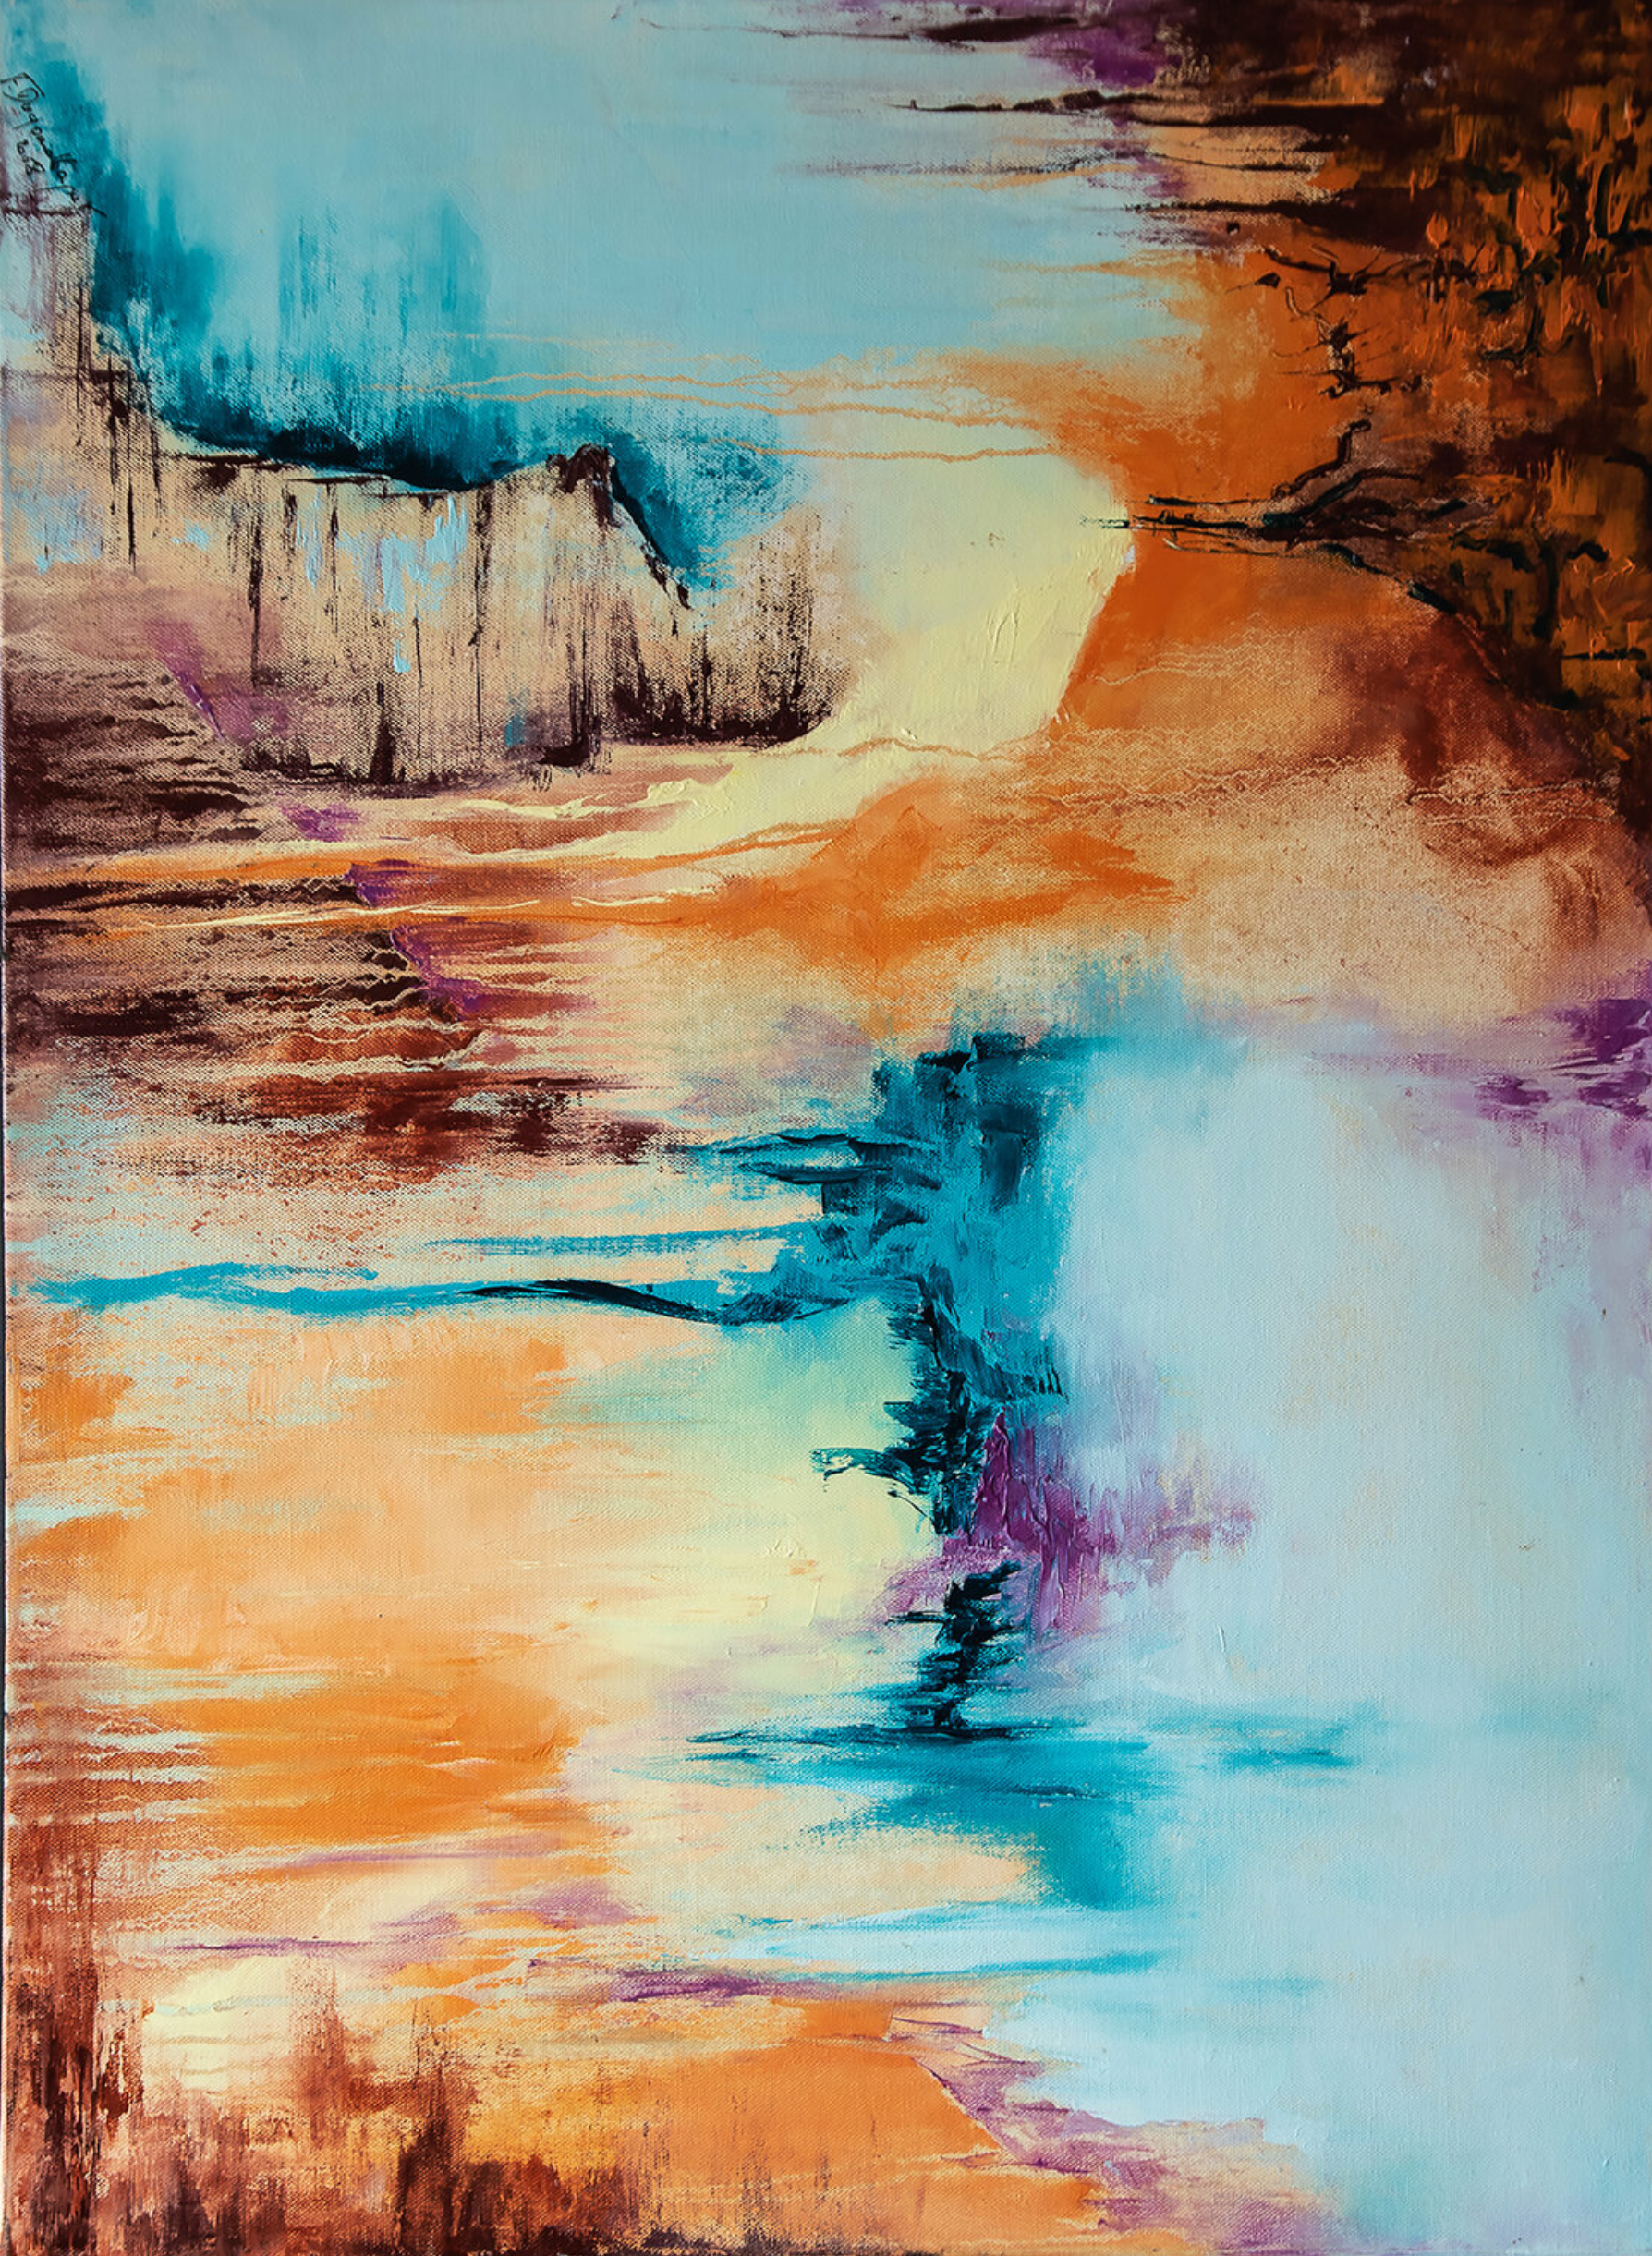 La peinture abstraite "Entre-Soi" de Françoise Dugourd-Caput montre l'abstraction du paysage, l'aspect de la crevasse et les gouttes dans les couleurs de la terre, de la mer, du ciel et de la chaleur La misère et la sérénité s'unissent dans cette peinture en une invitation au voyage